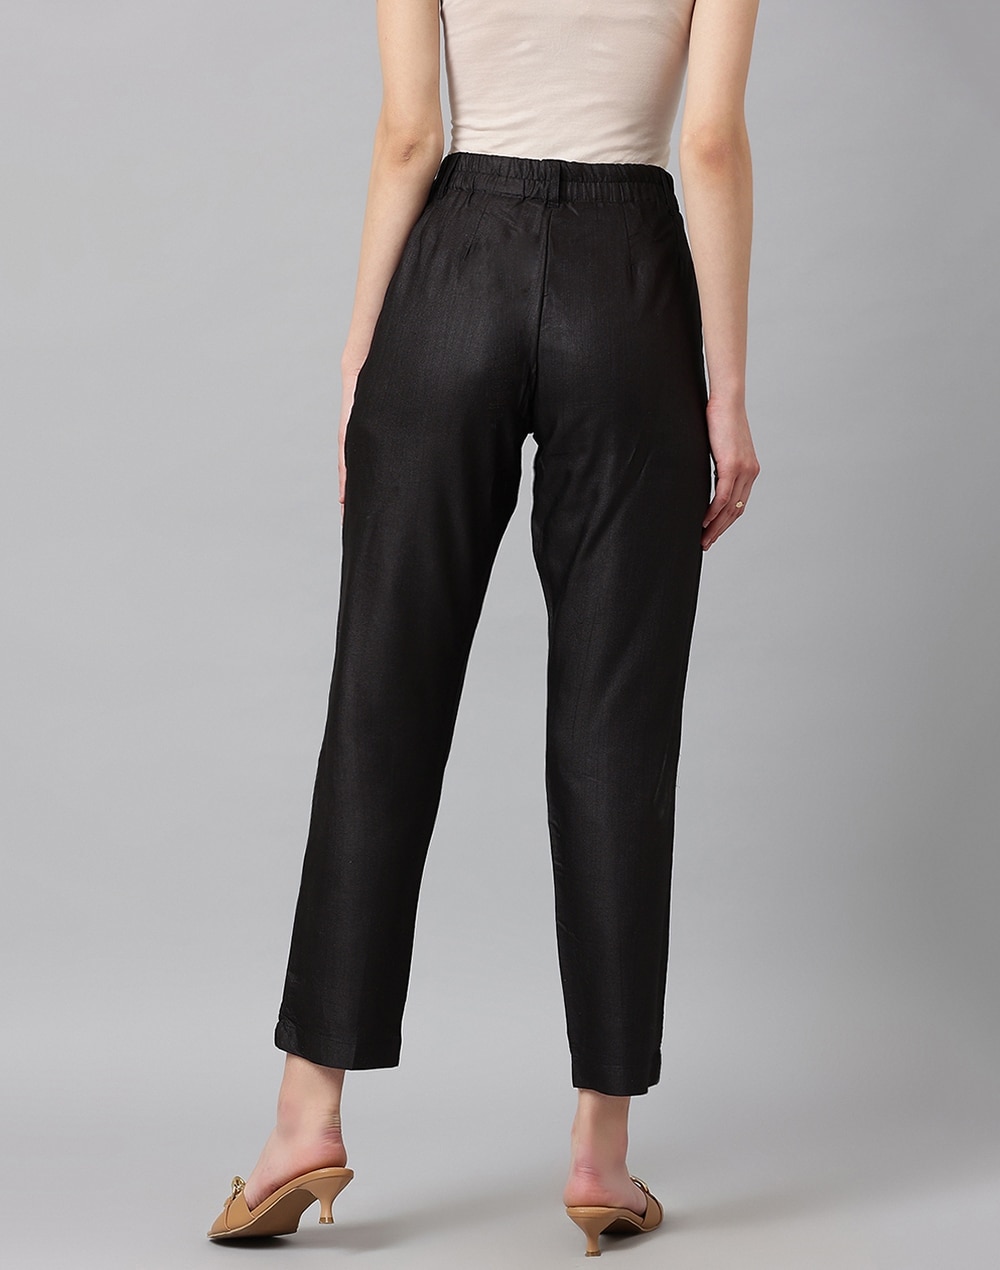 Buy Viscose Tussar Slim Fit Casual Pant for Women Online at Fabindia